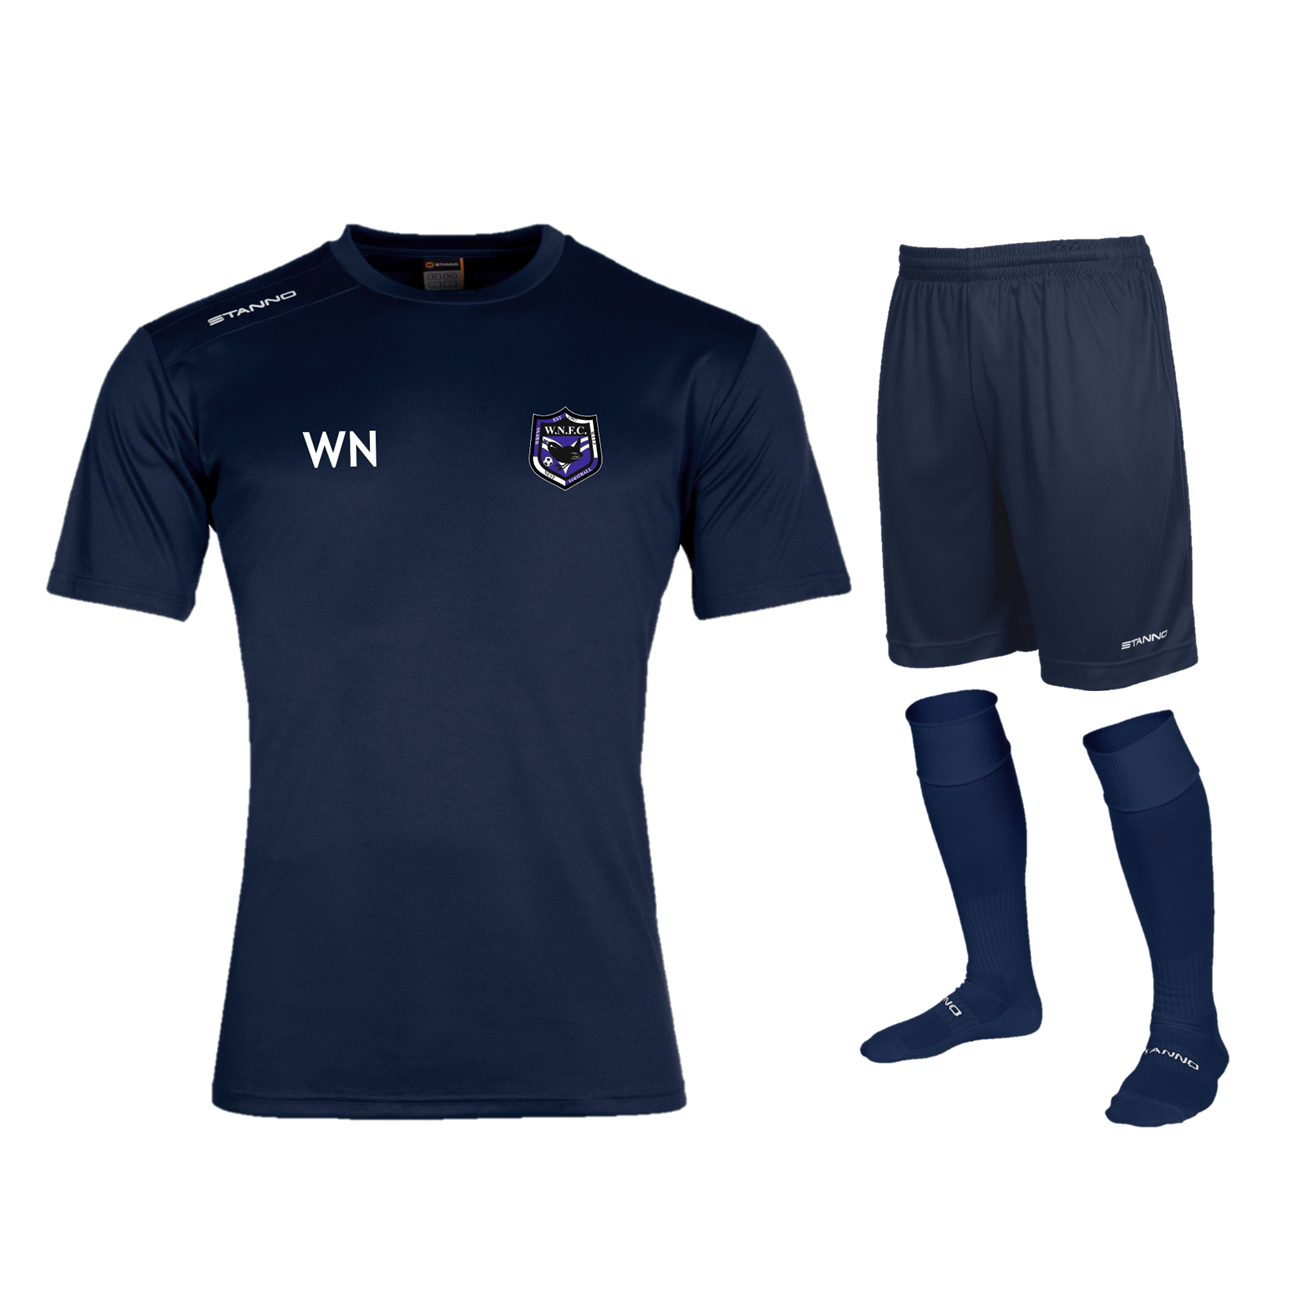 Wrens Nest FC - Junior Training Kit